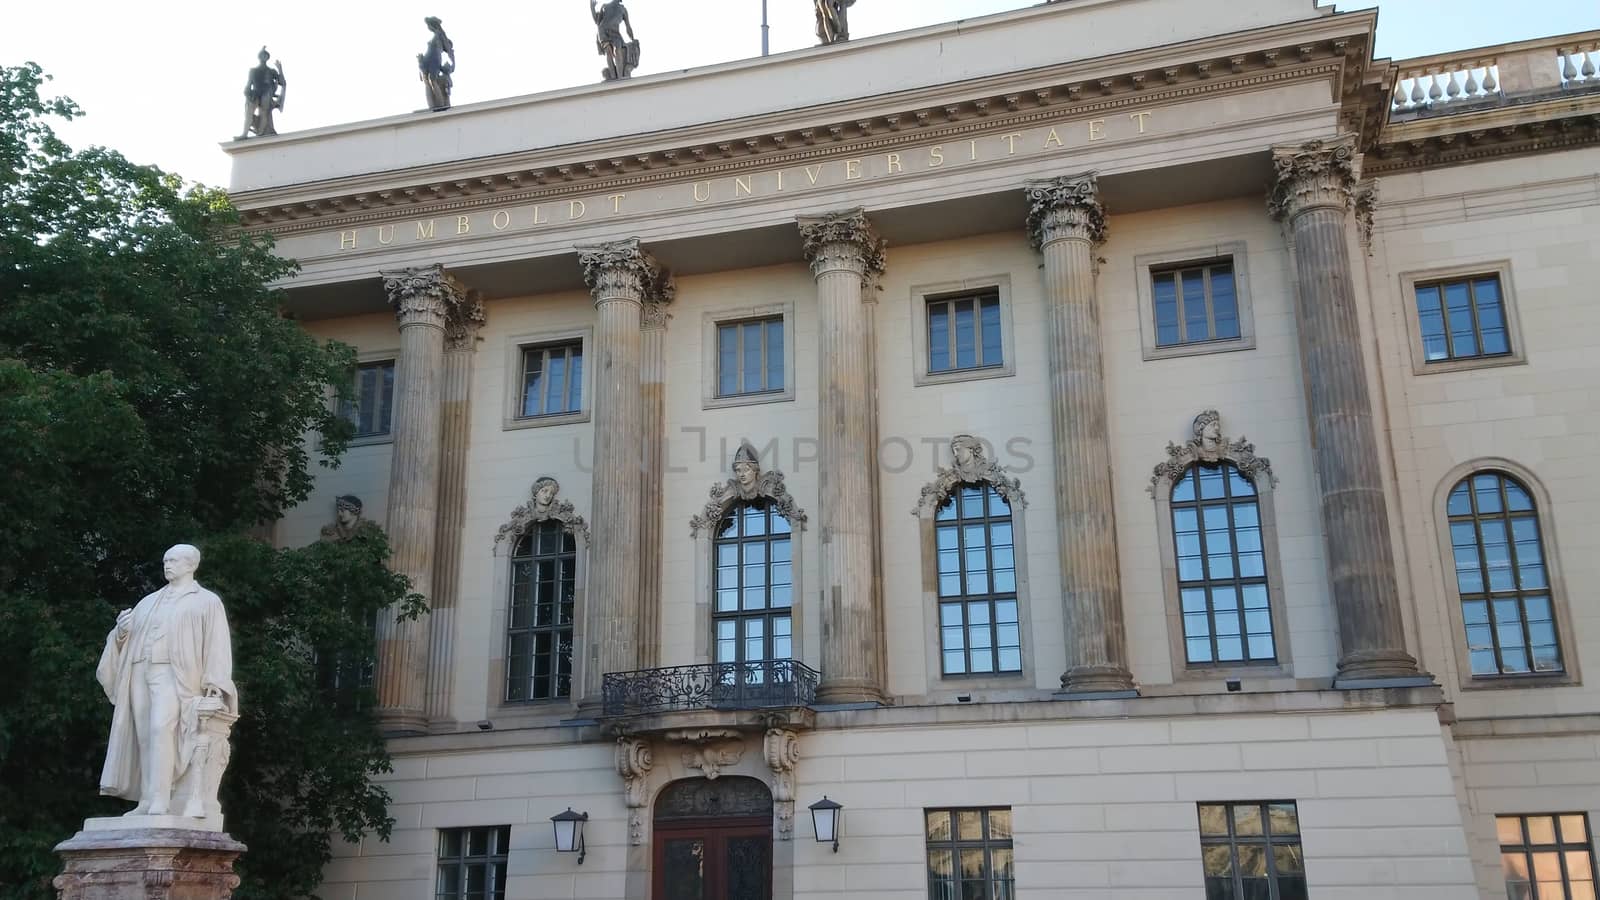 Famous Humboldt University in Berlin by Lattwein